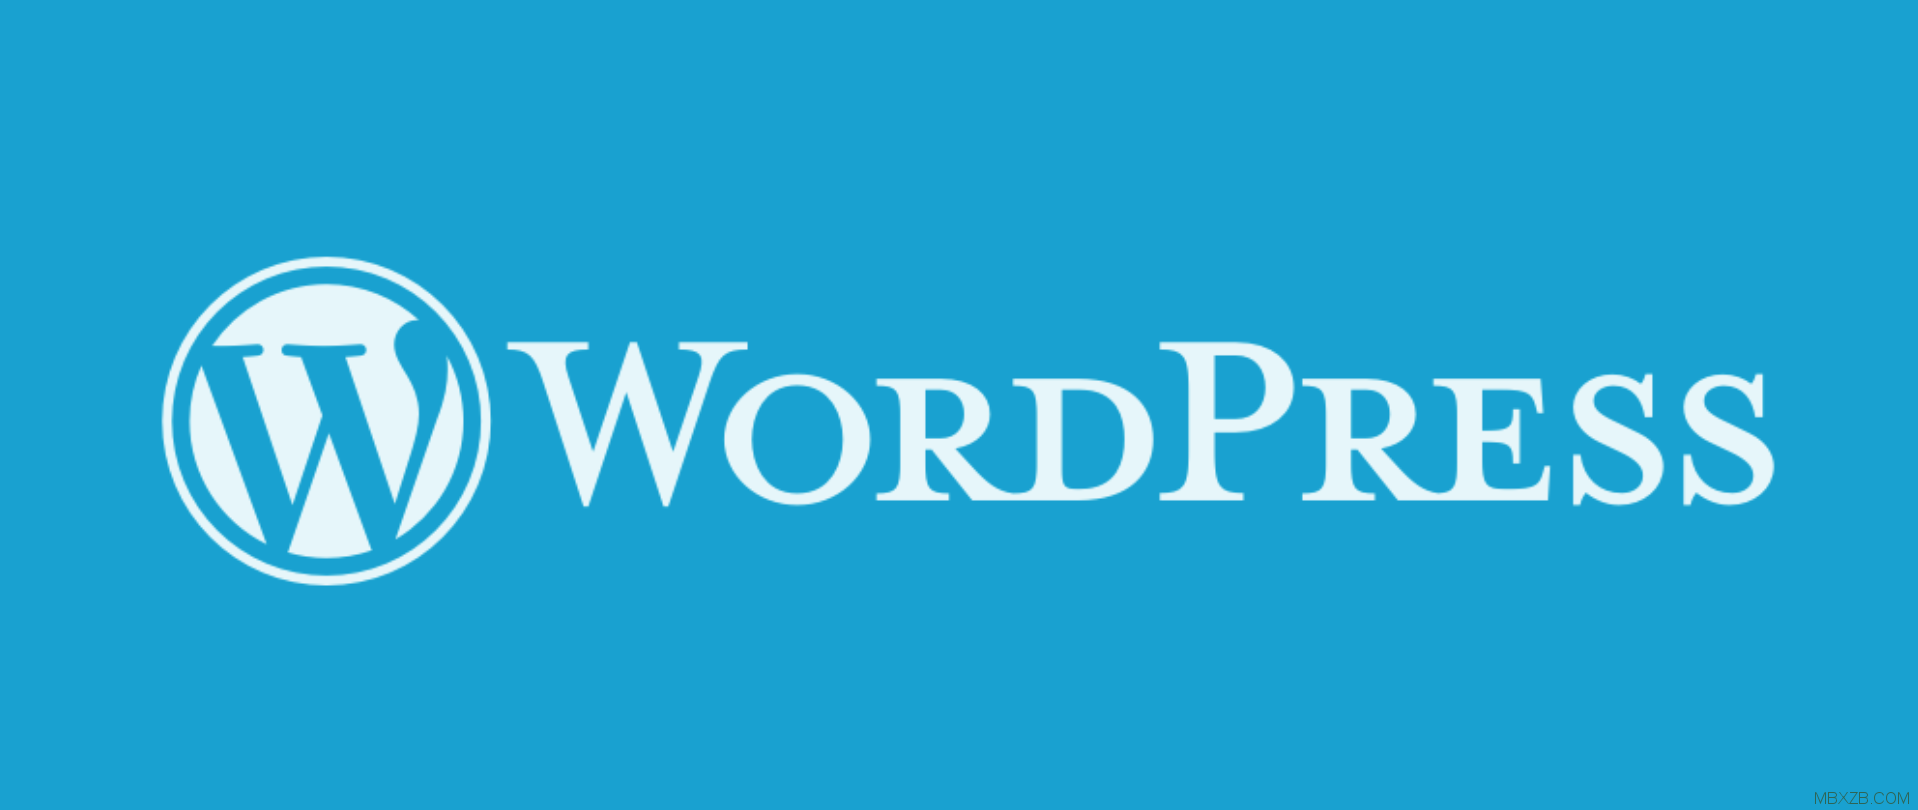 美国白宫官网 CMS 从 Drupal 转换至 WordPress